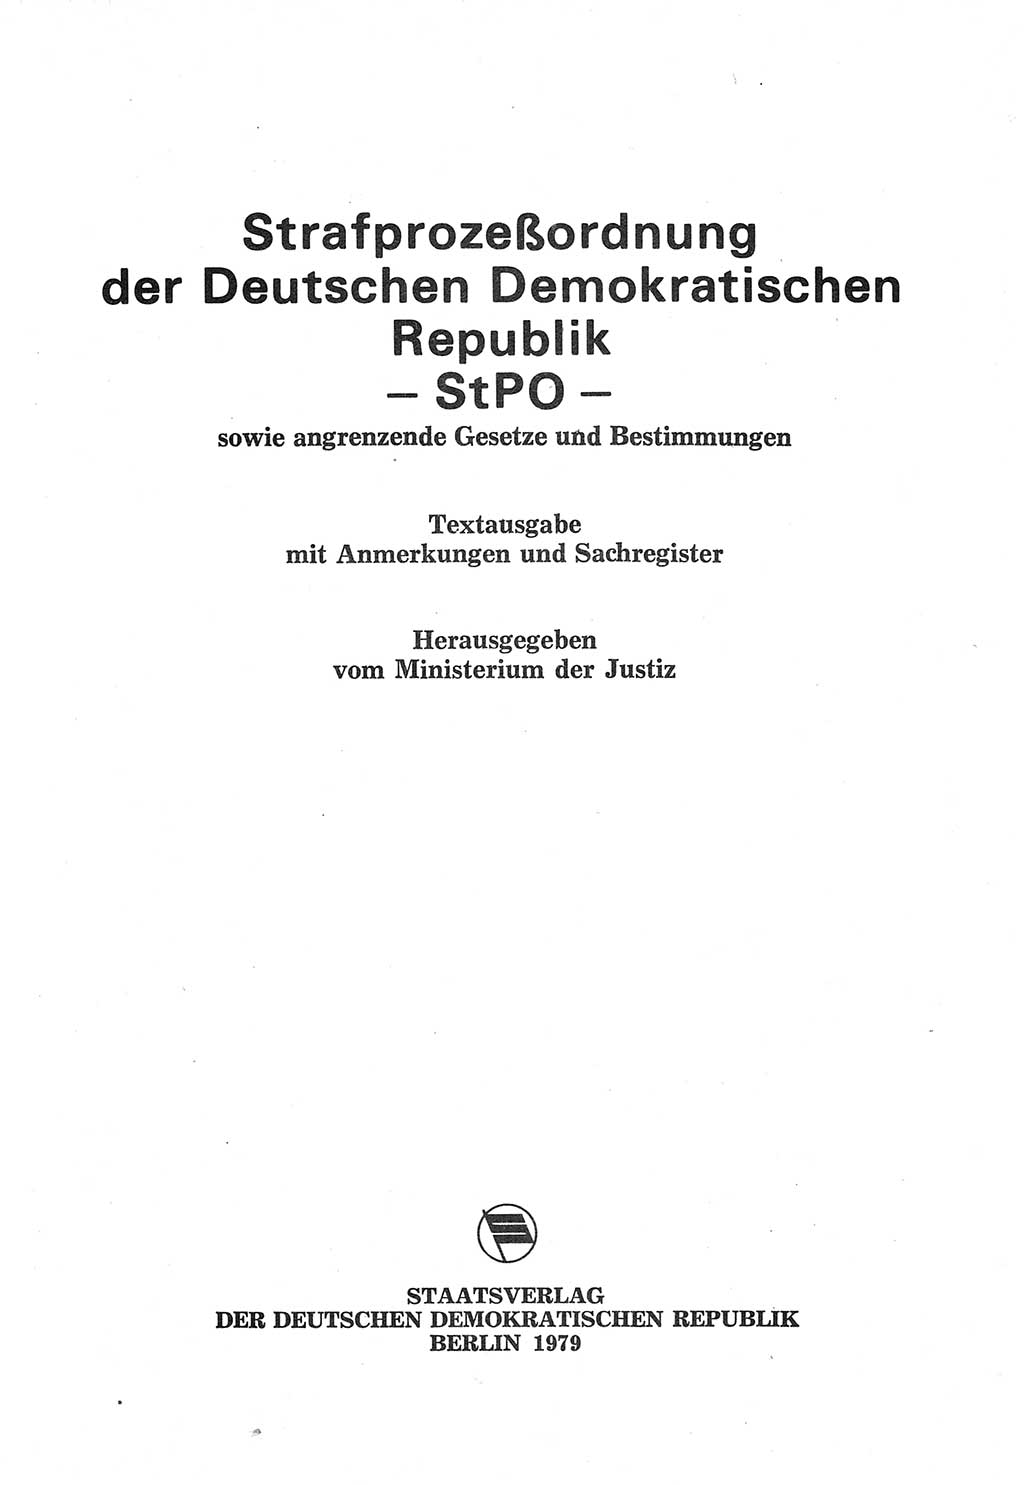 Strafprozeßordnung (StPO) der Deutschen Demokratischen Republik (DDR) sowie angrenzende Gesetze und Bestimmungen 1977, Seite 1 (StPO DDR Ges. Best. 1977, S. 1)